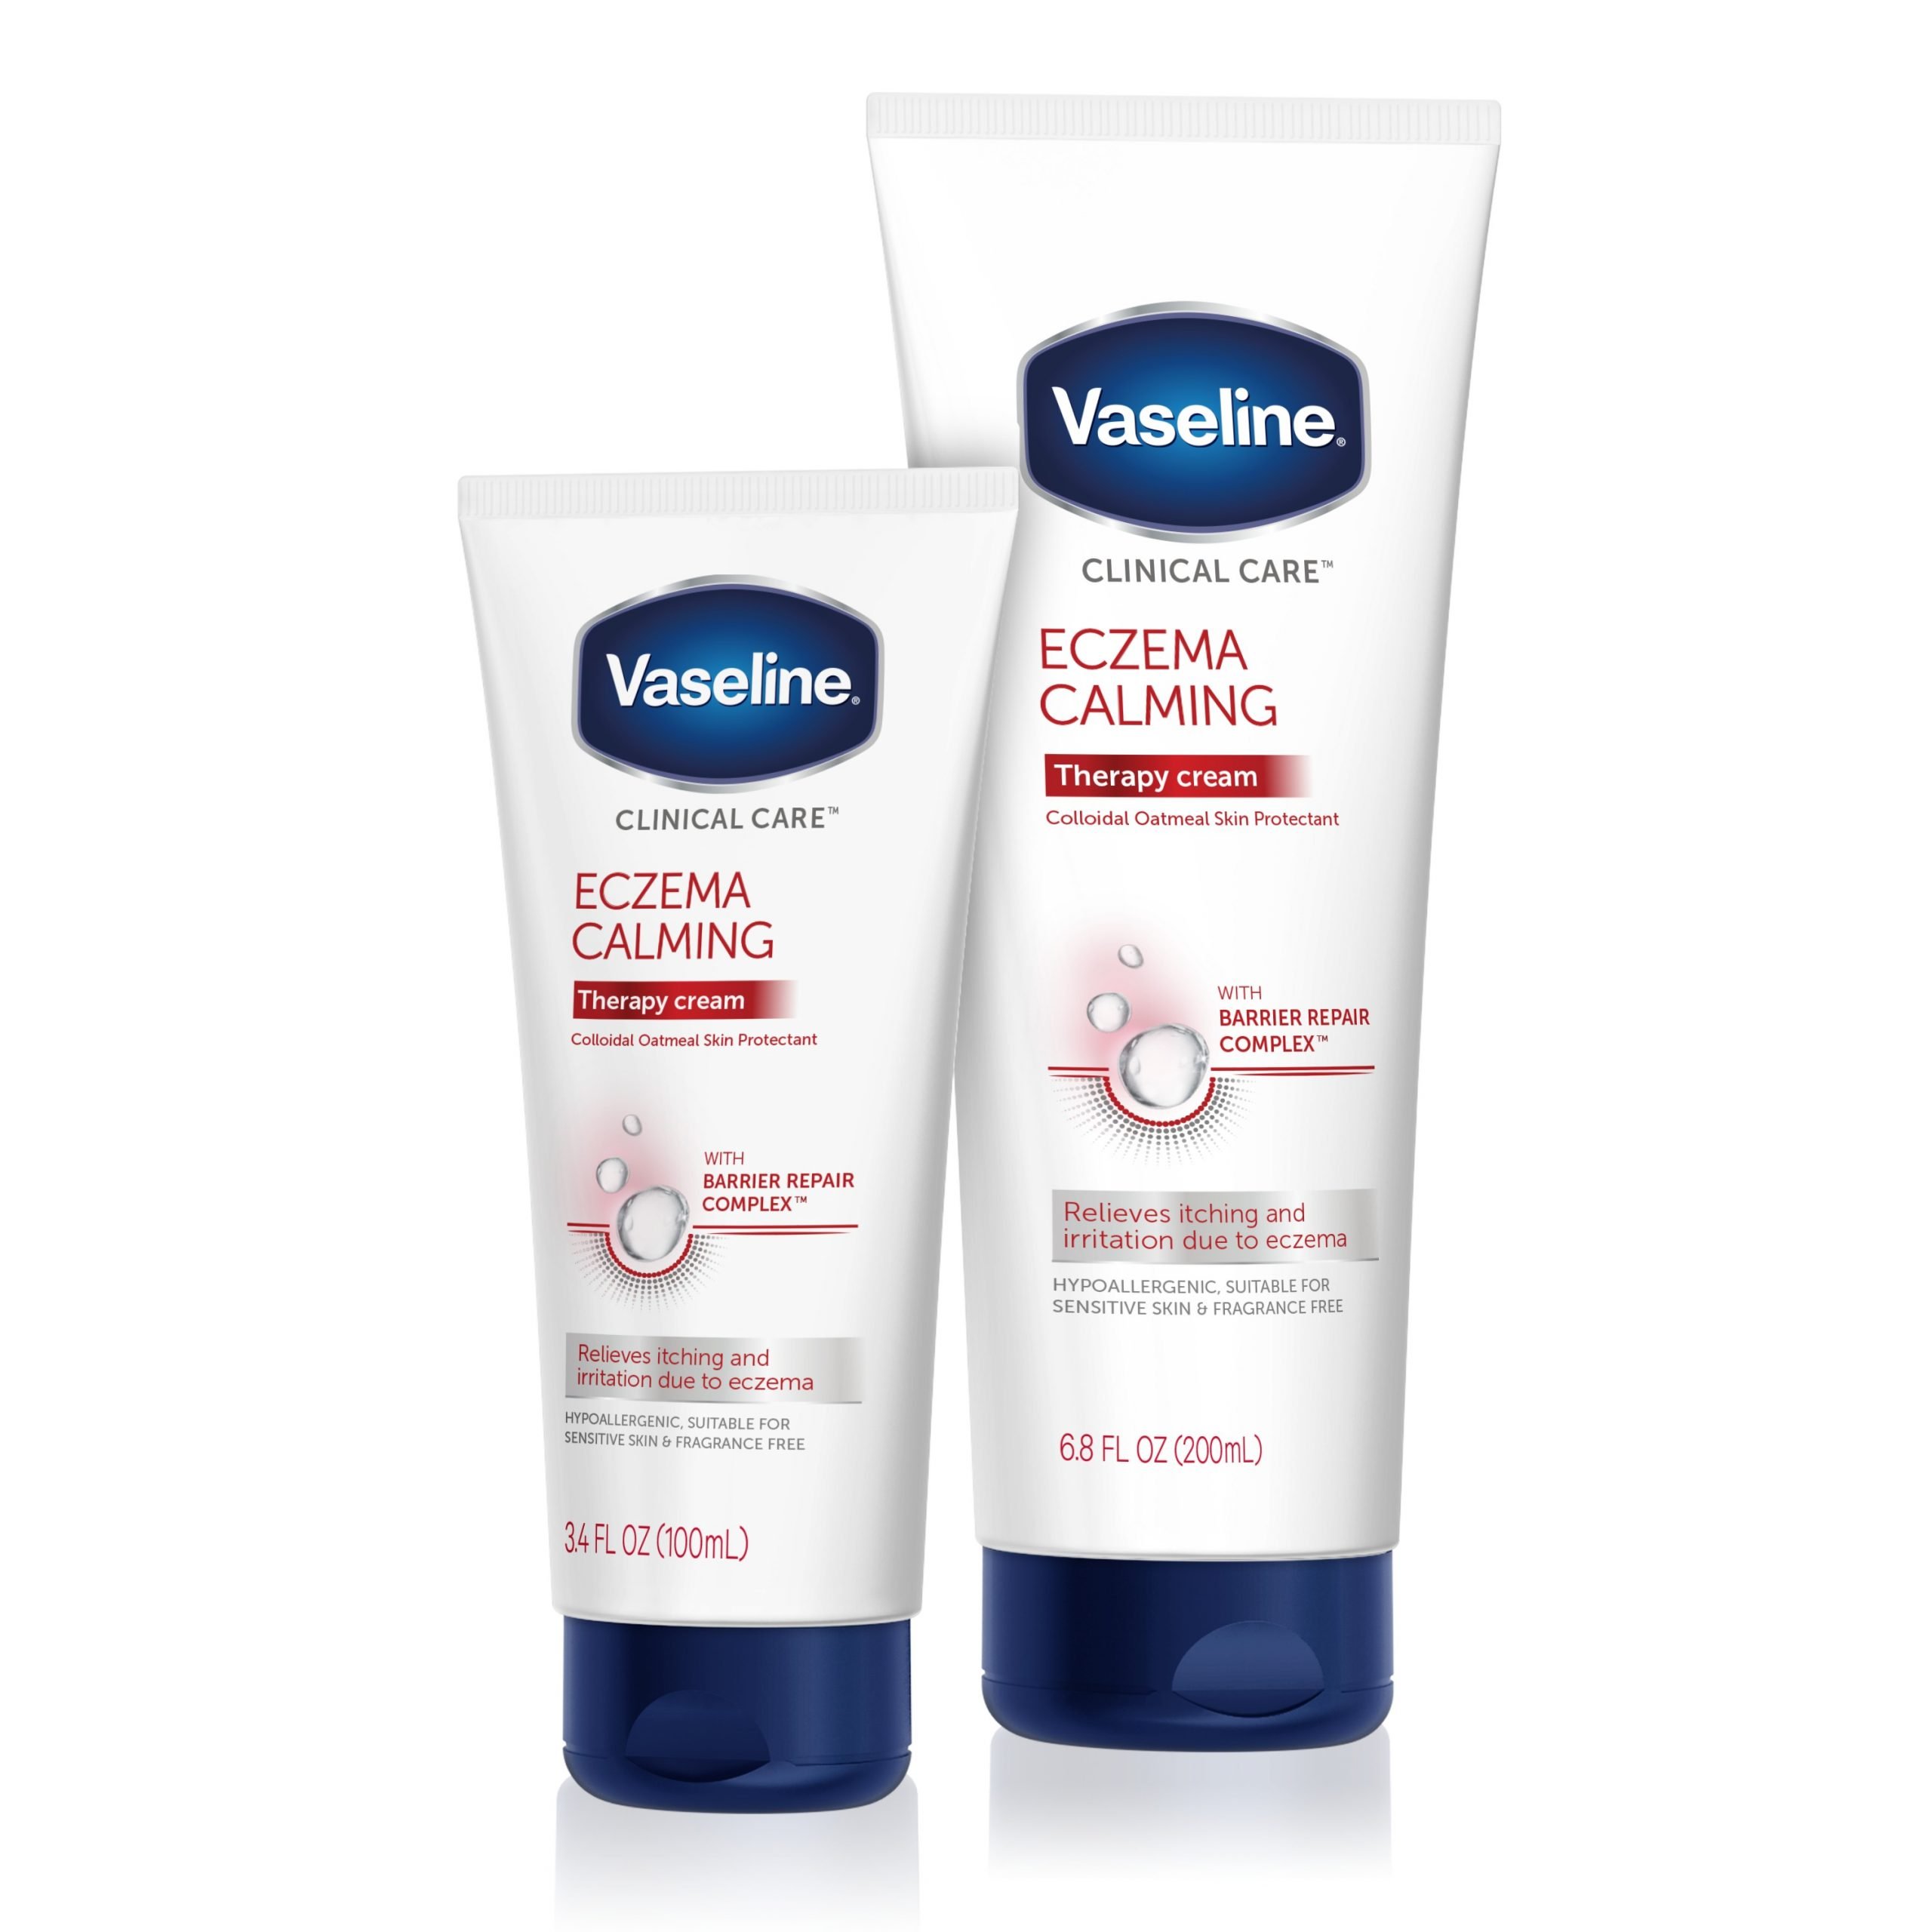 Does Vaseline Help Eczema